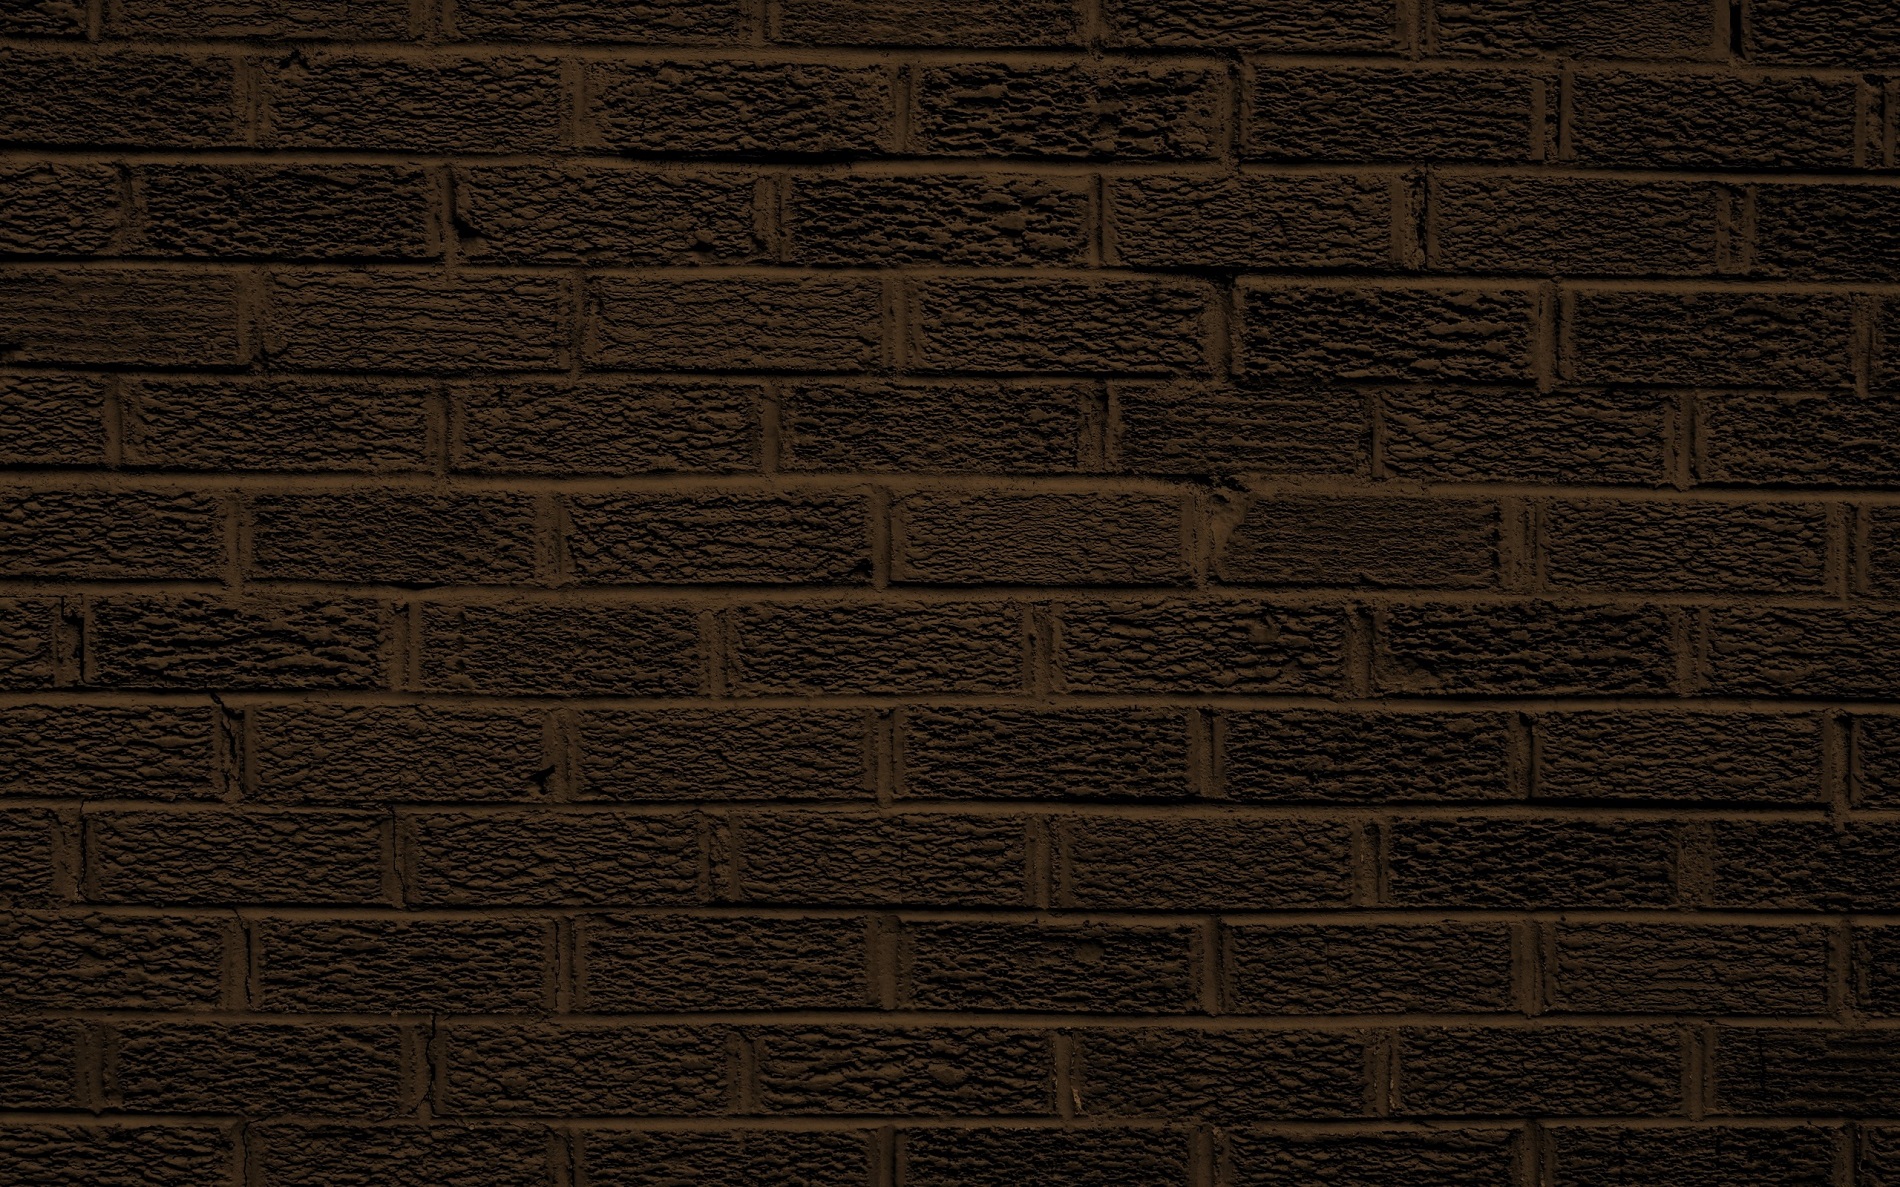 Brick Wallpaper 30